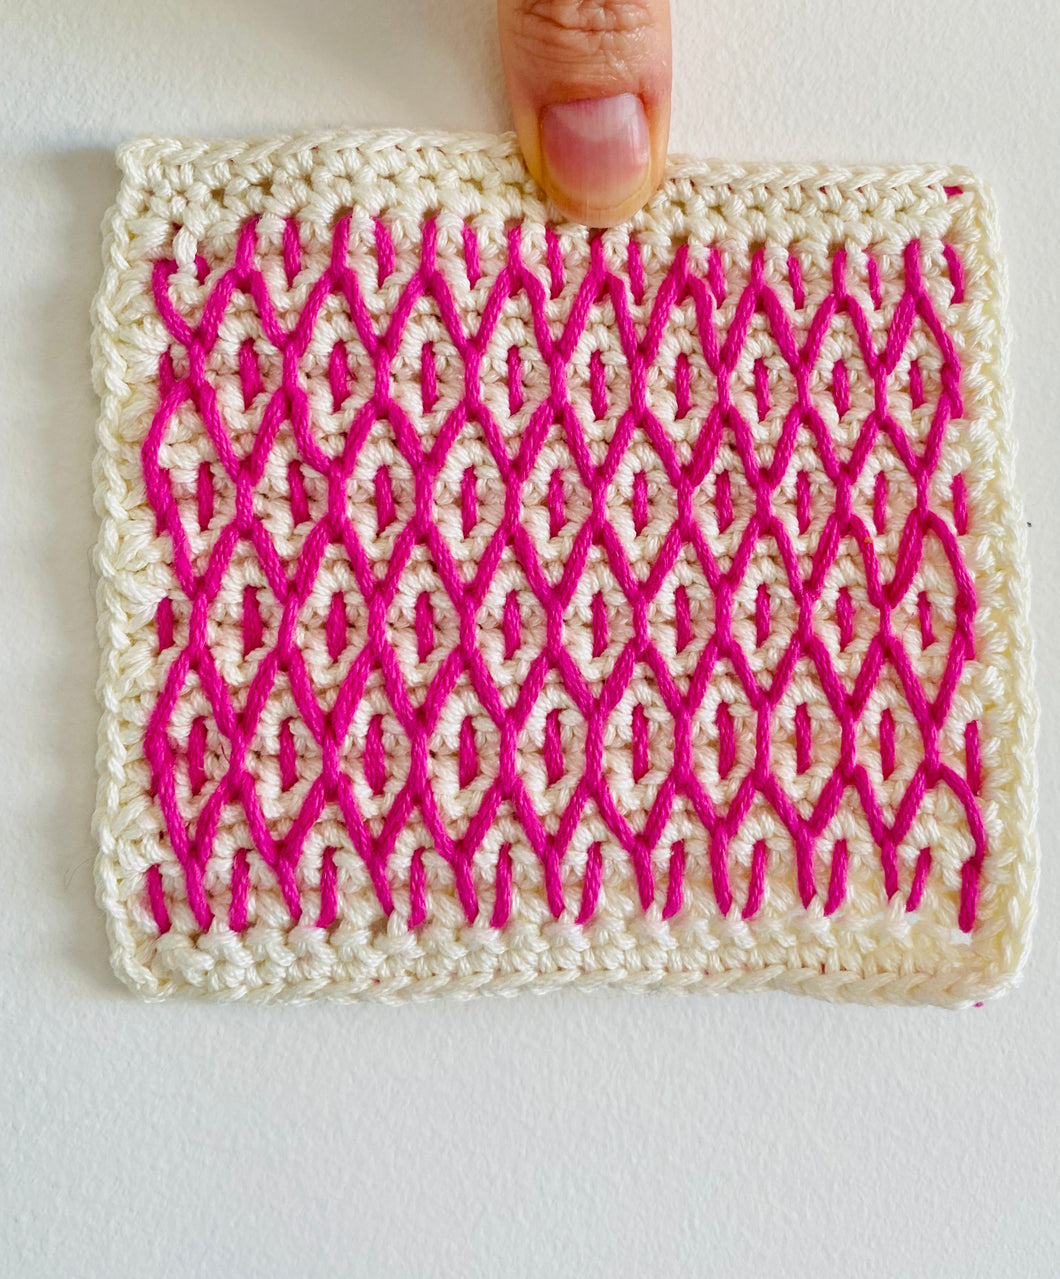 Bird's Eye - An Embroidery on Crochet Motif